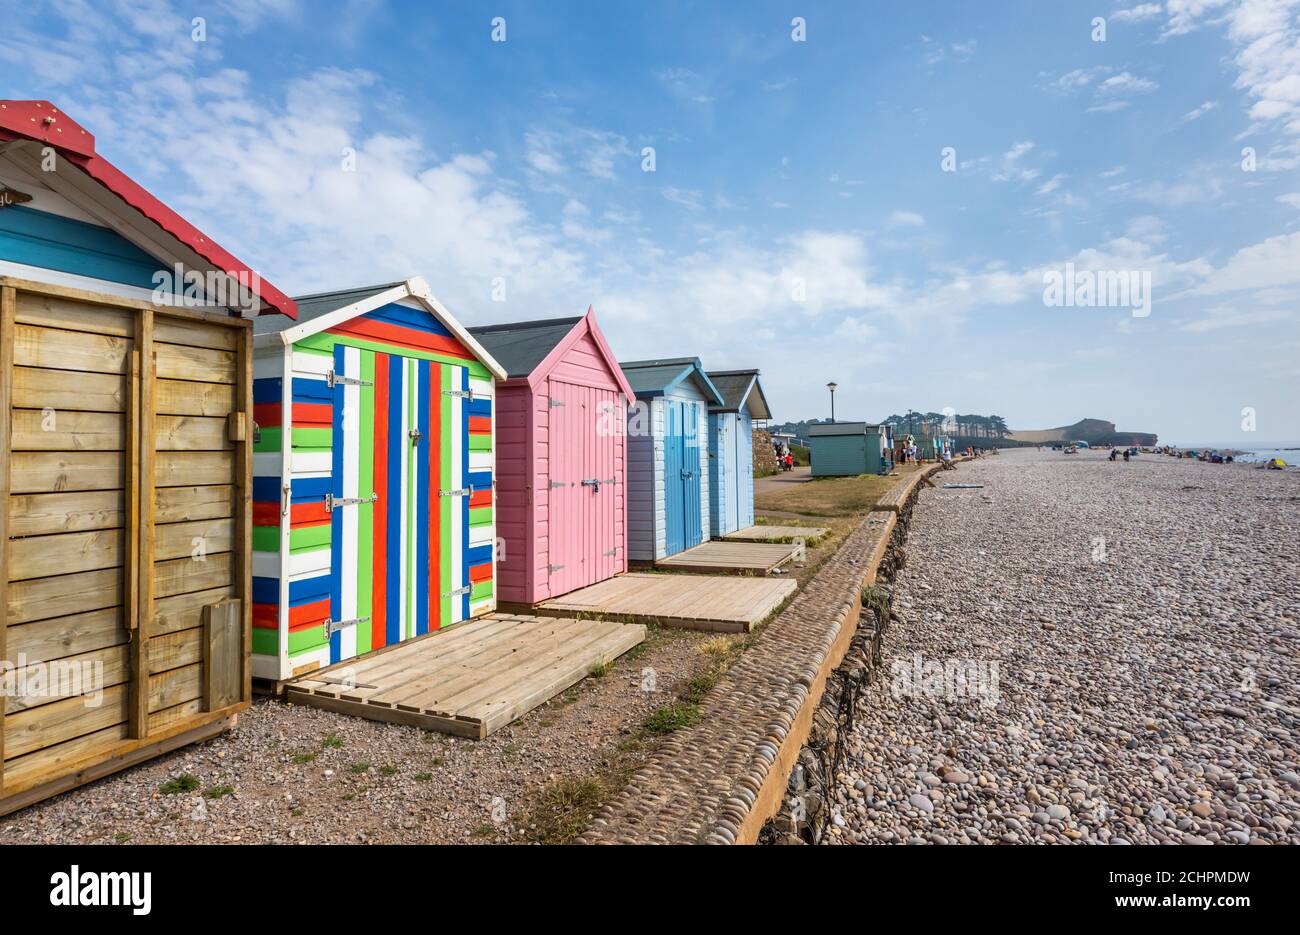 Plage typique de bord de mer huttes sur la promenade à Budleigh Salterton, une petite ville de la côte sud avec une plage de poney à l'est du Devon, dans le sud-ouest de l'Angleterre Banque D'Images